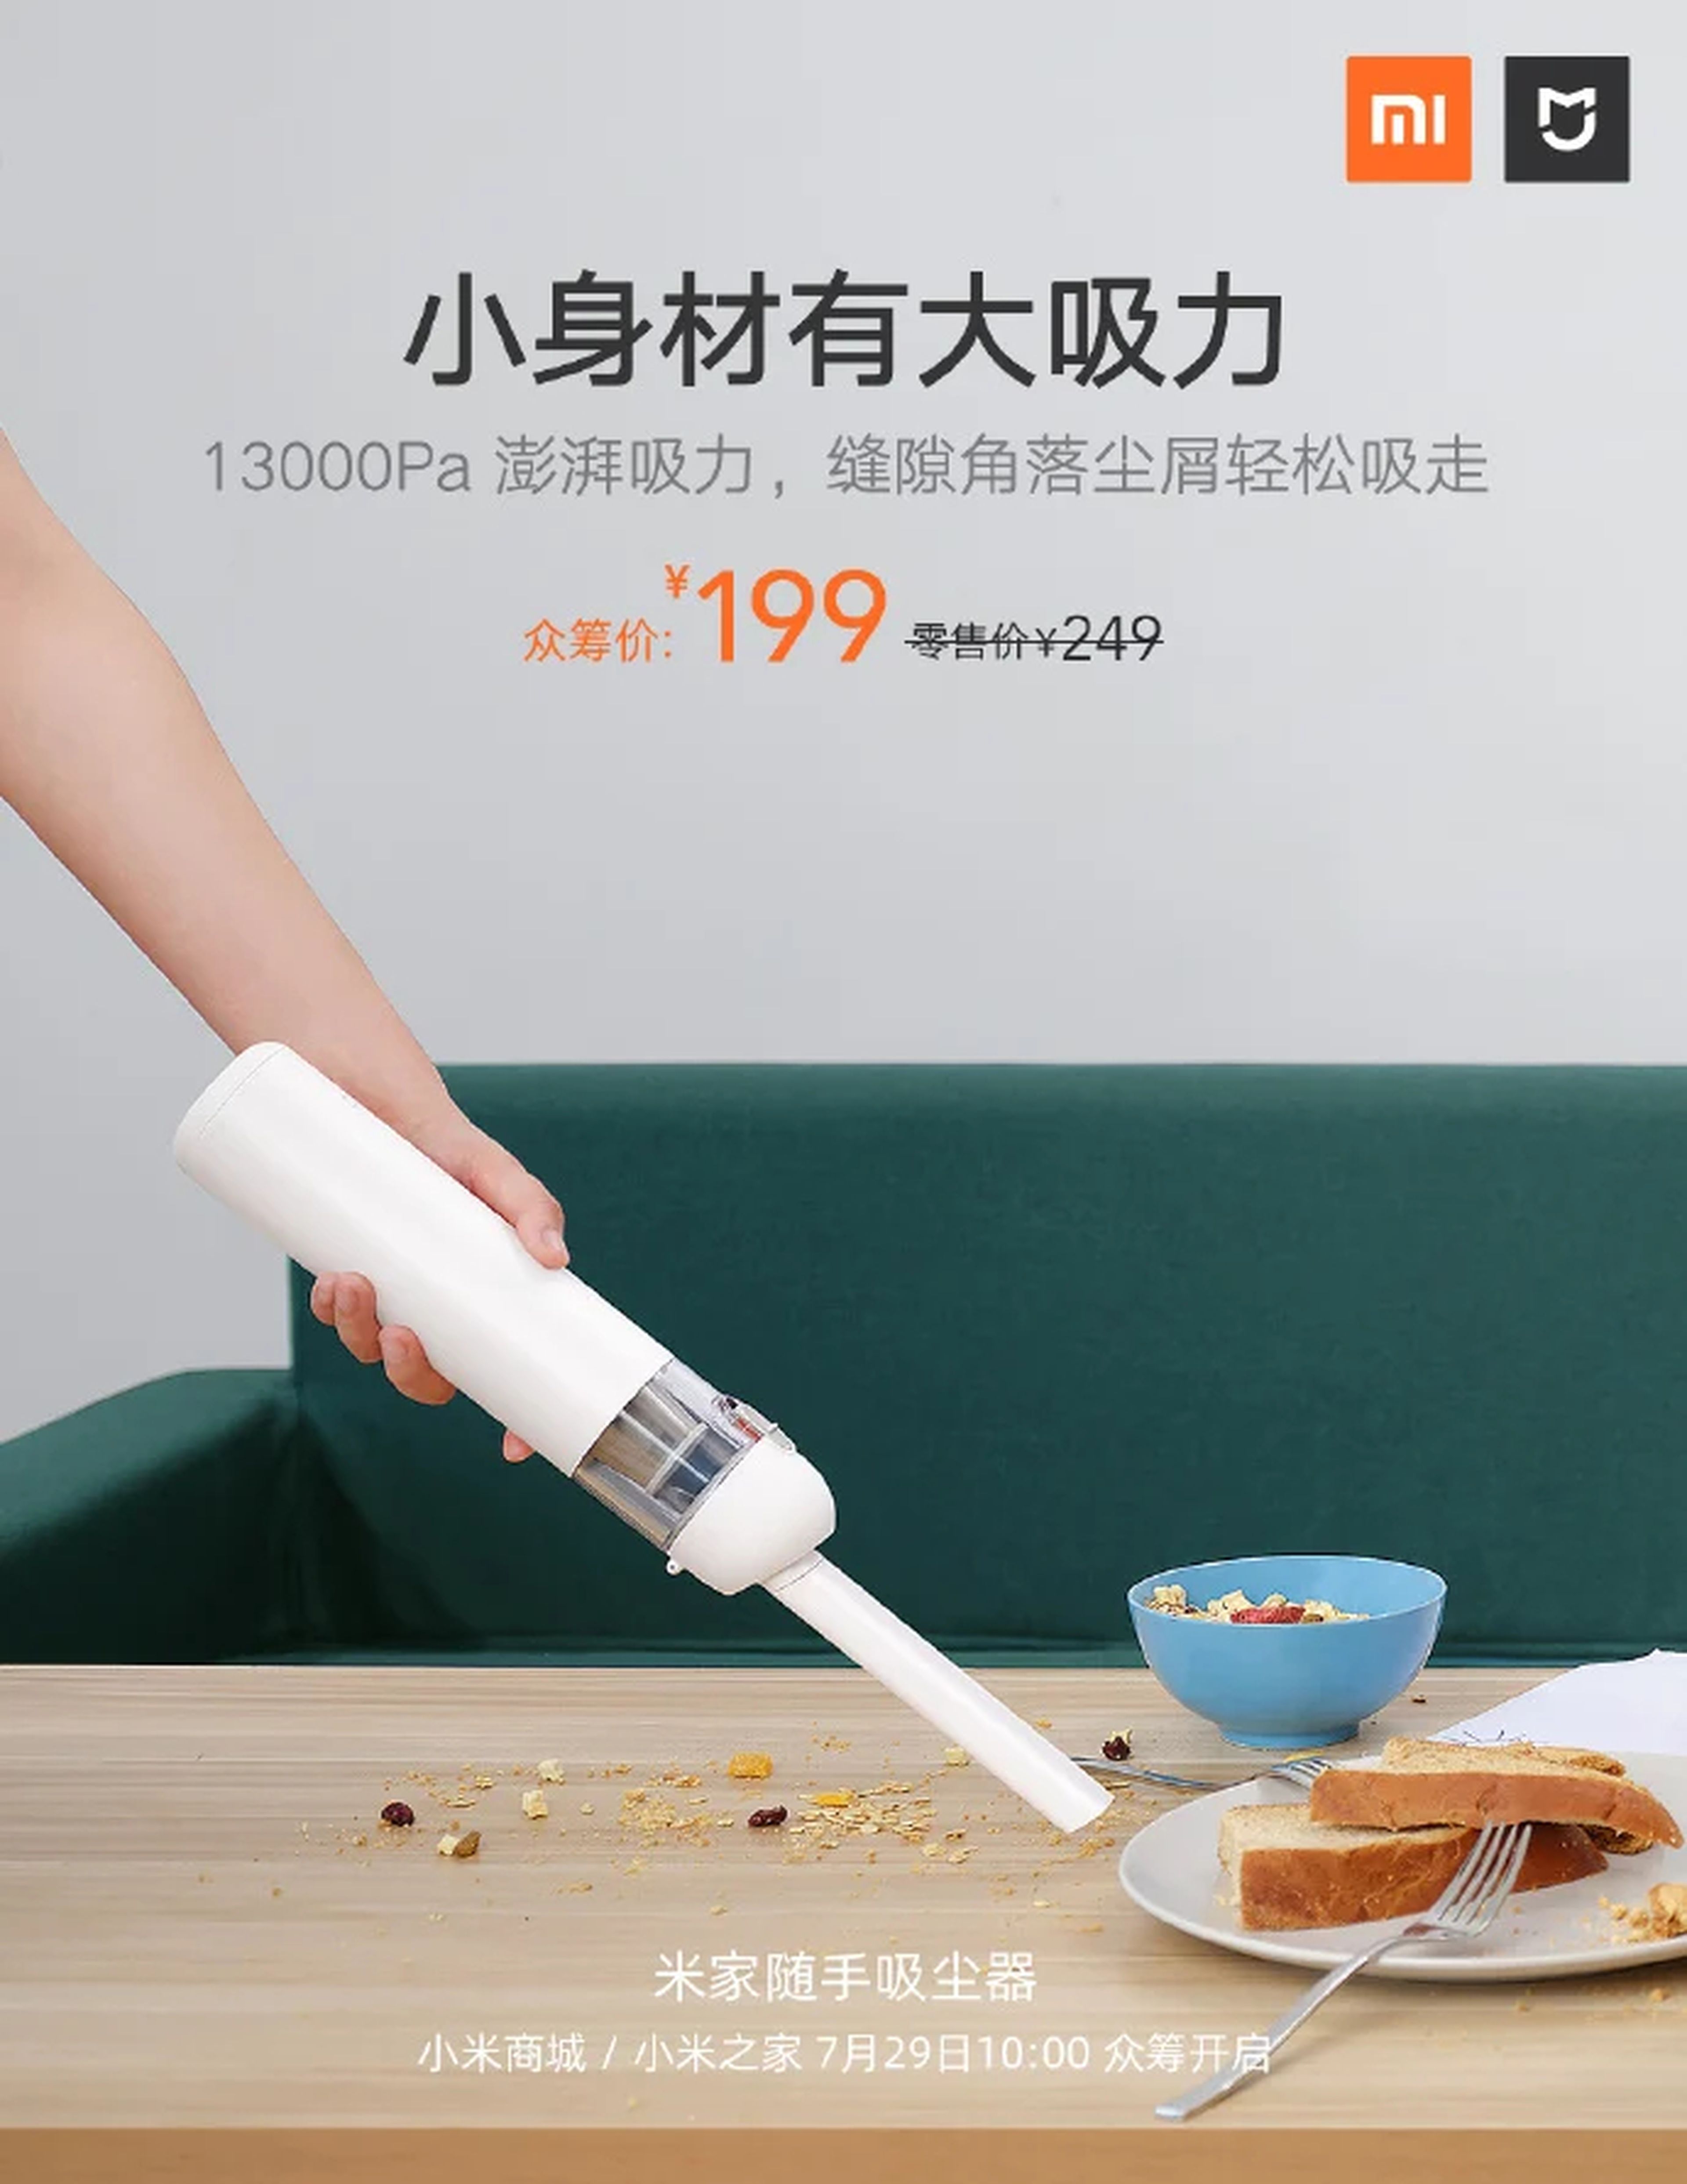 Xiaomi lanza una promoción en la aspiradora de mano mejor valorada con  descuento de 80 euros